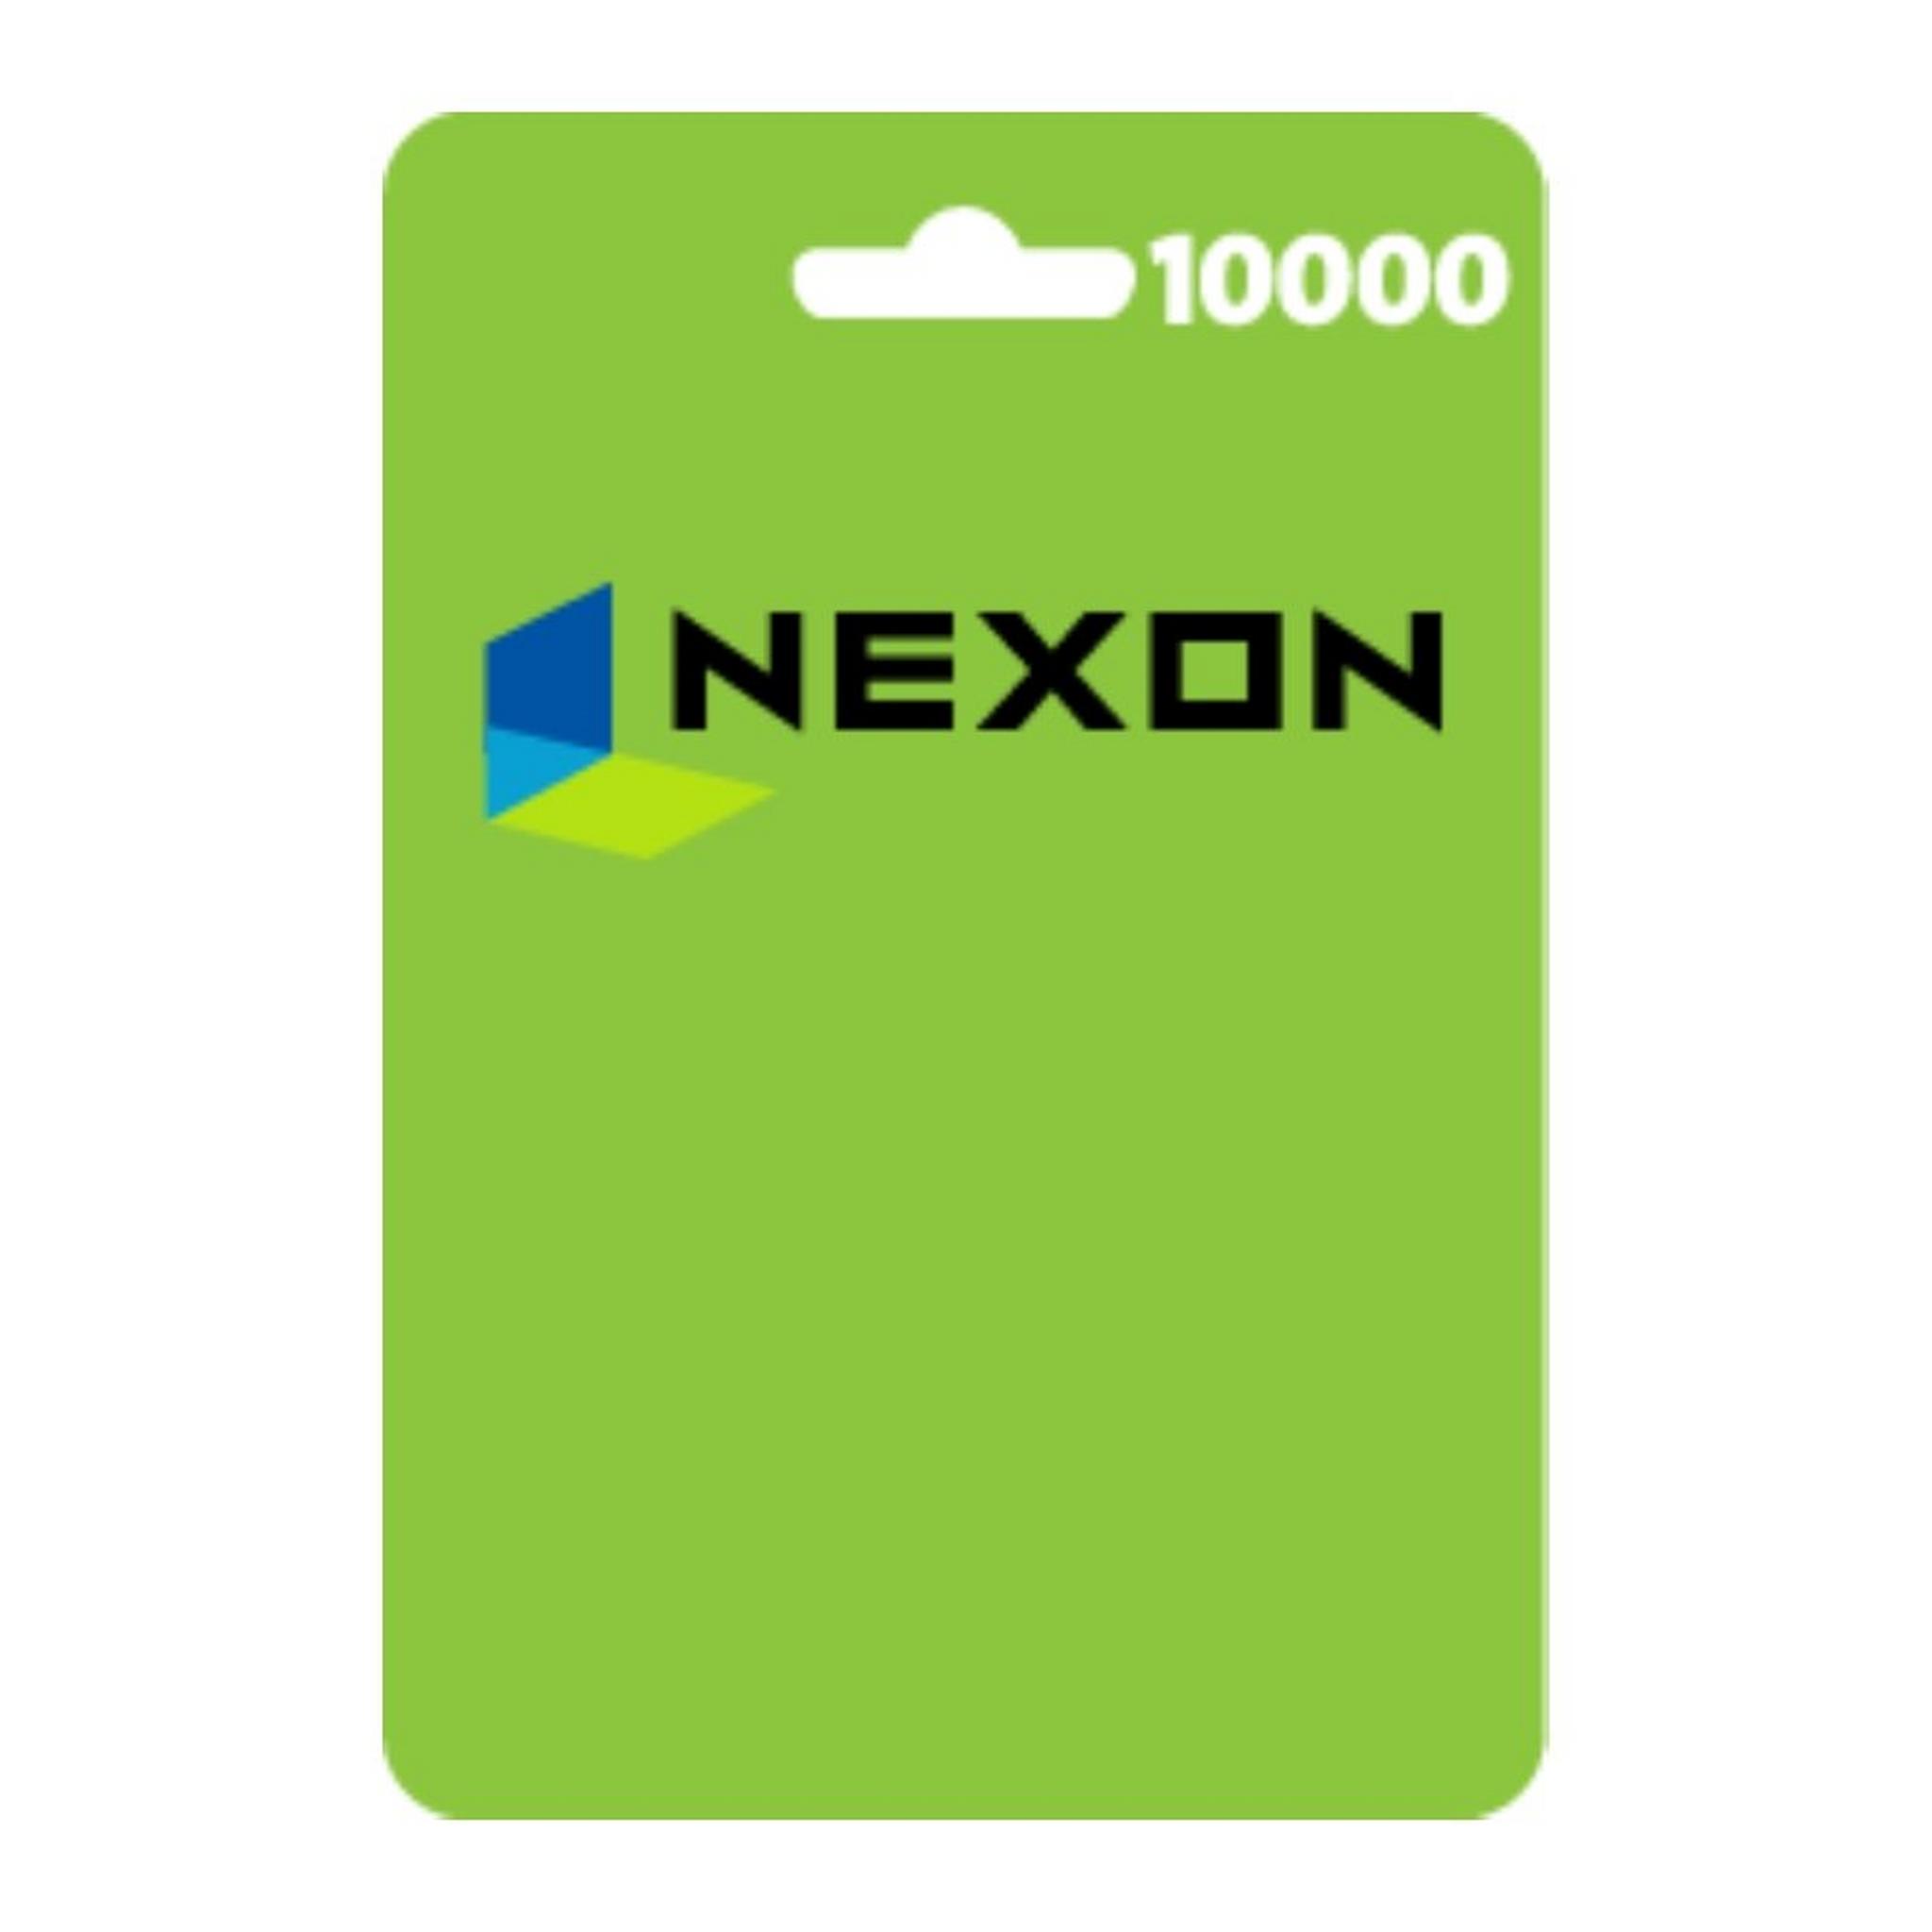 بطاقة نيكسون اي يو - 10000 كاش